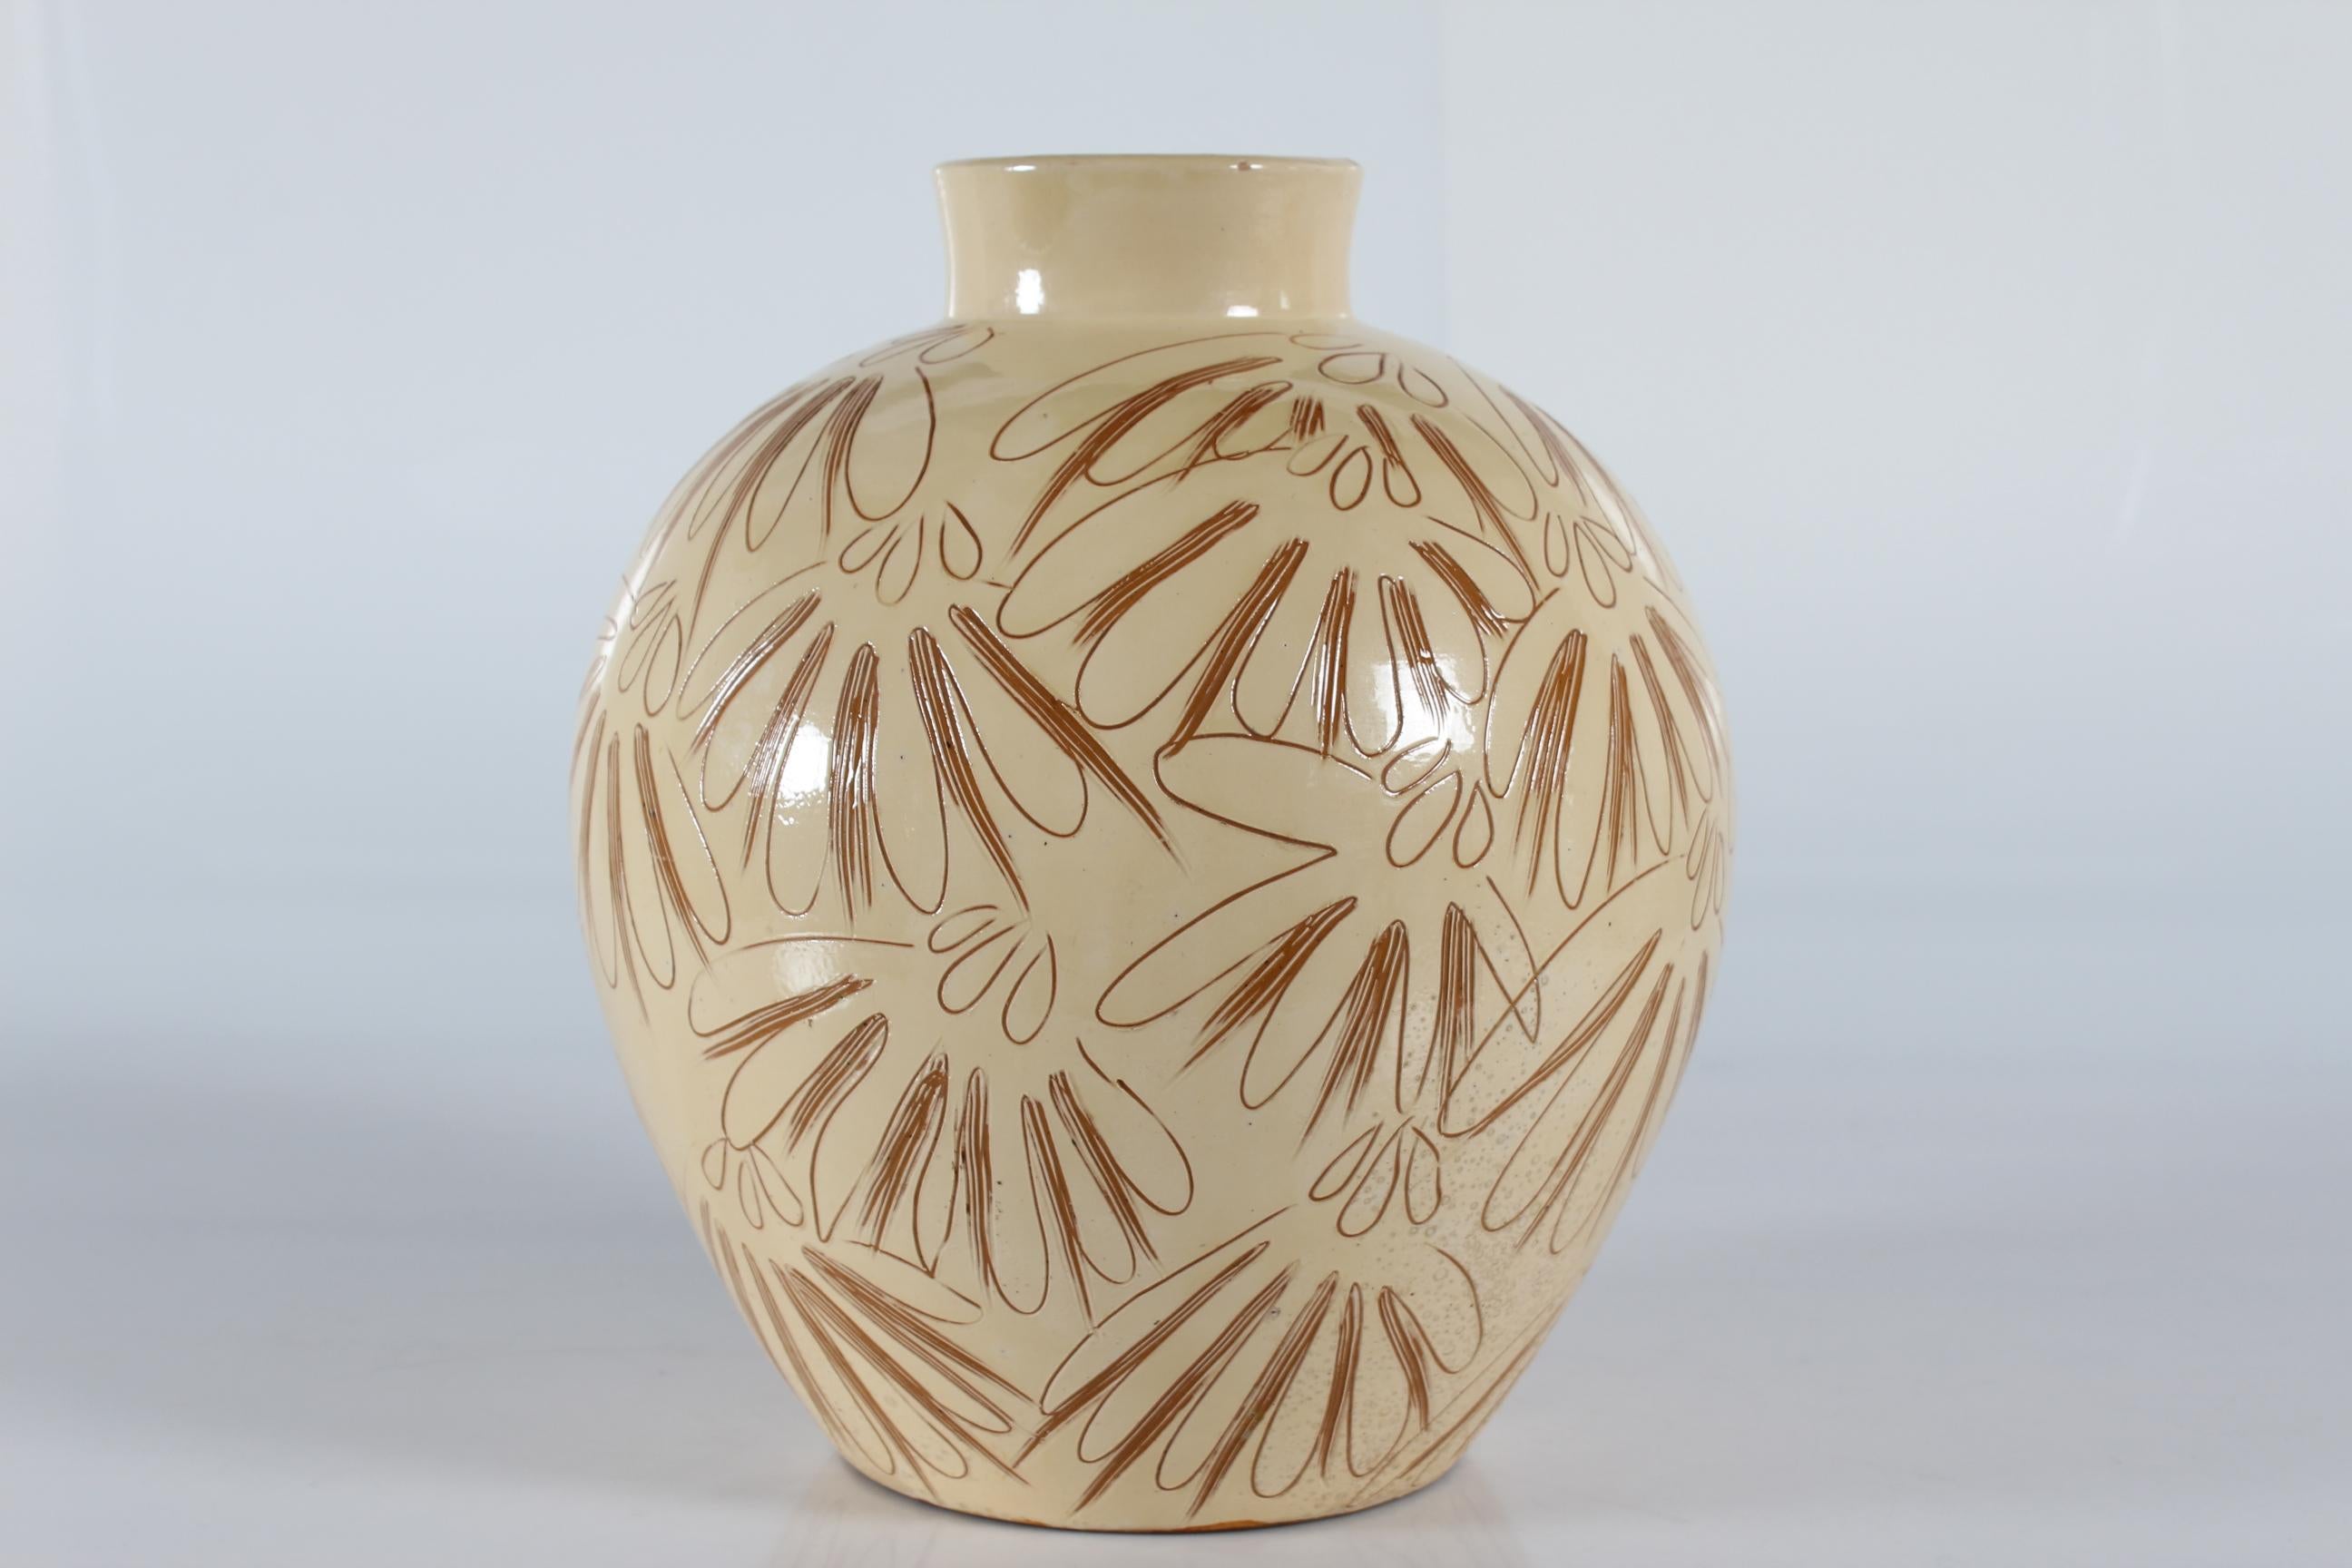 Énorme vase de sol danois en céramique réalisé par Herman A. Kähler dans les années 1940-50.
Le vase de sol a une base jaune crème avec une décoration incisée où la couleur de l'argile brune apparaît. La technique est appelée Sgraffito.
Cette